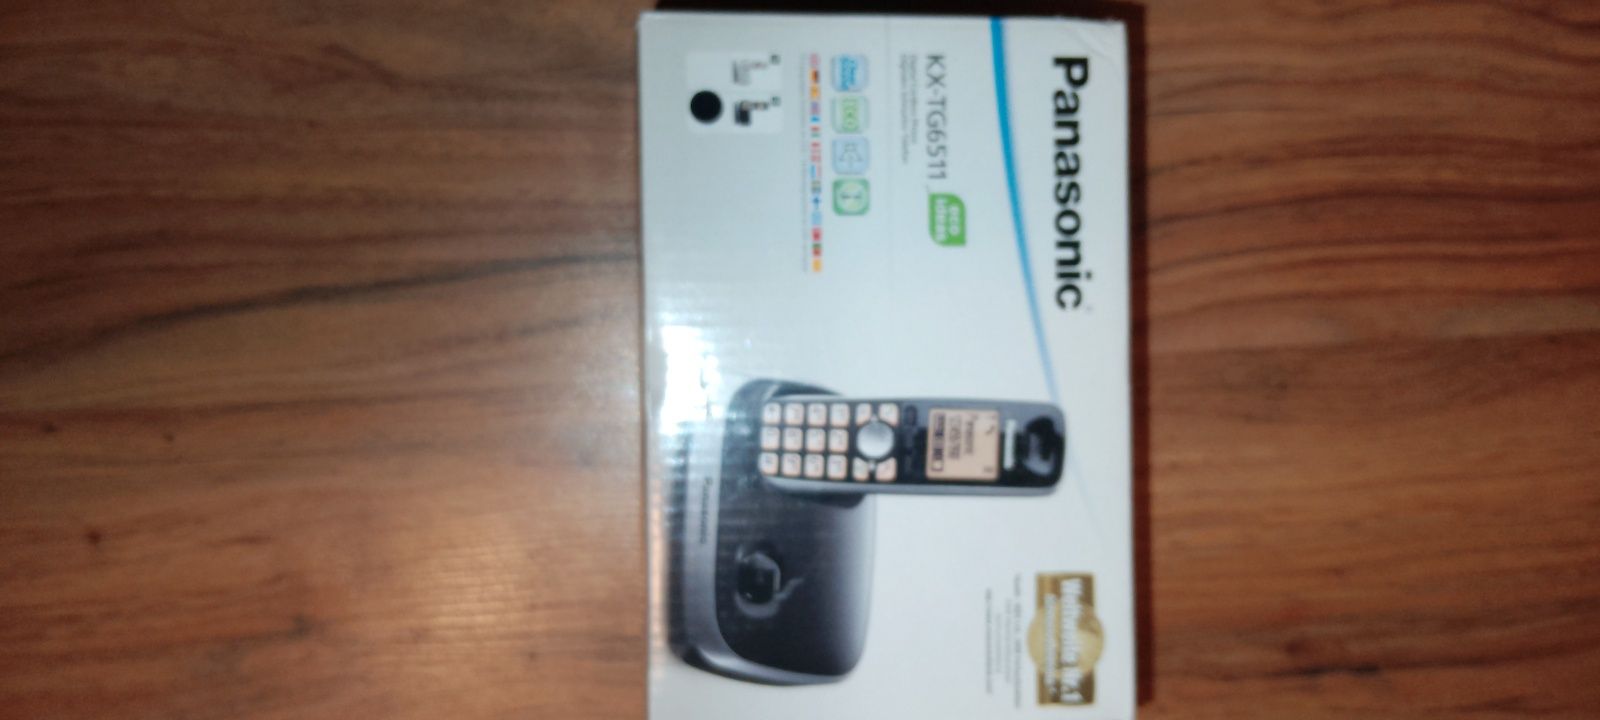 Домашен безжичен телефон Panasonic